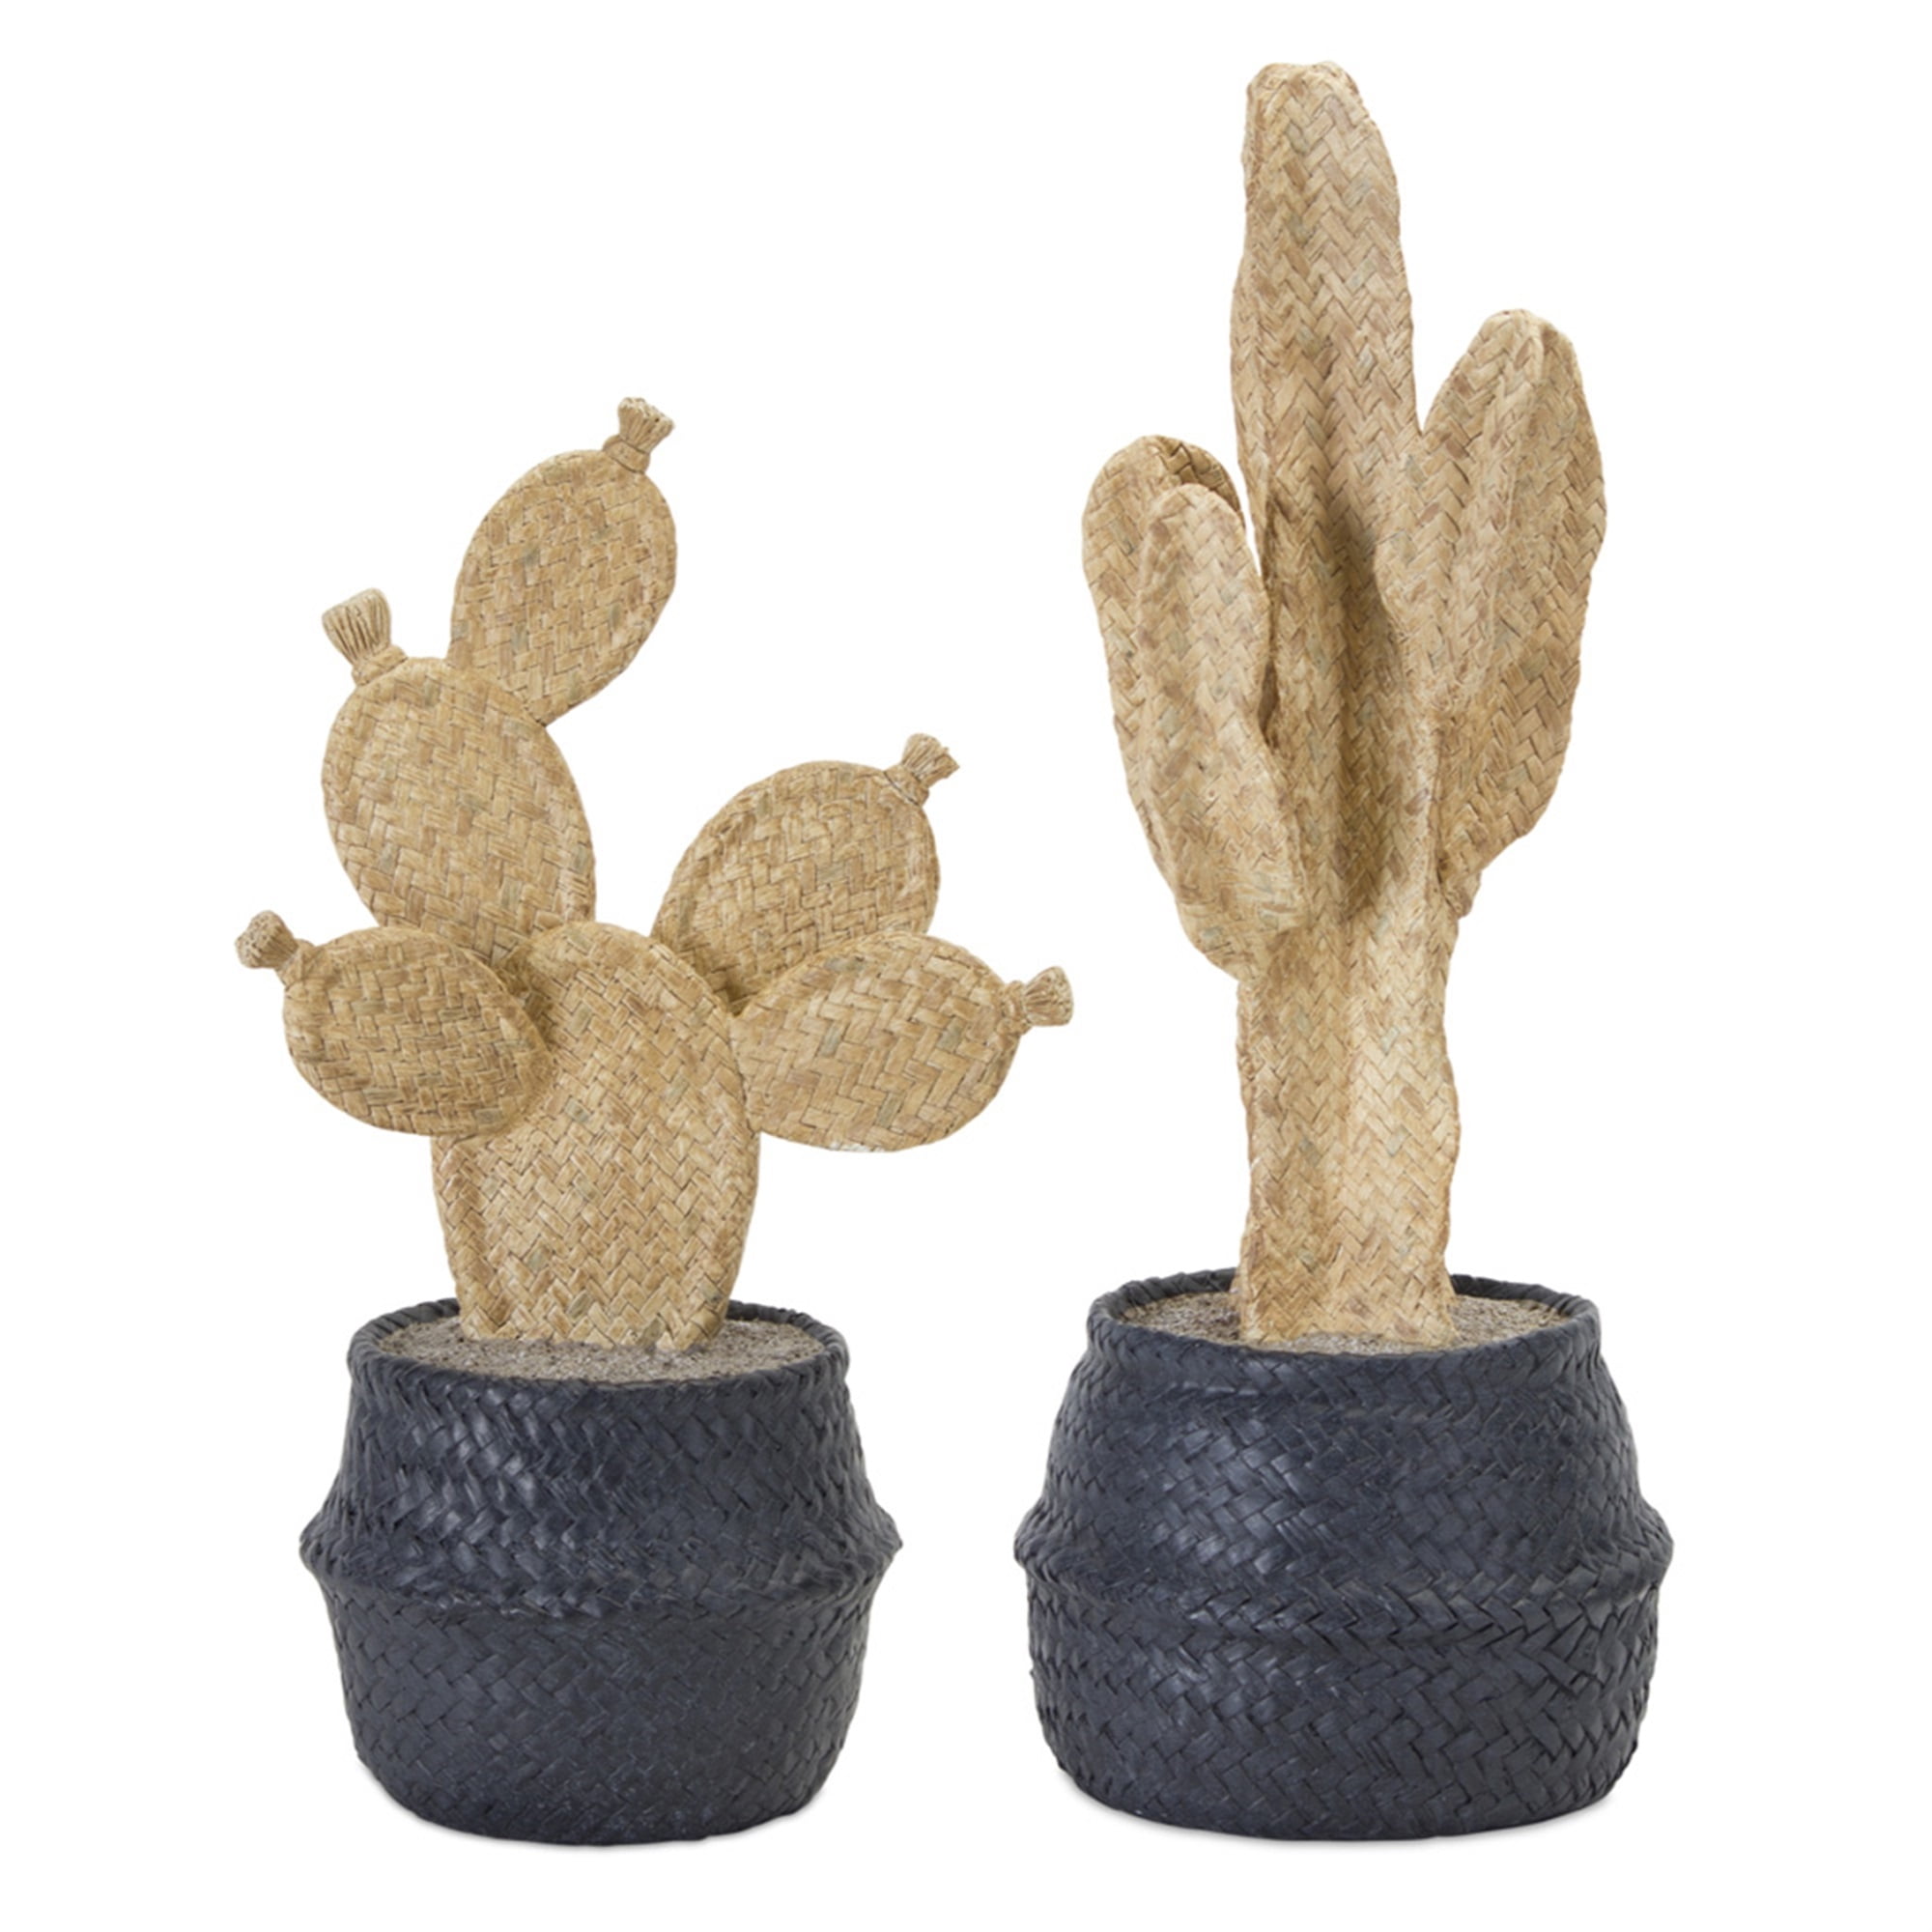 Cactus Pots (Set of 2) 13"H, 16"H Resin